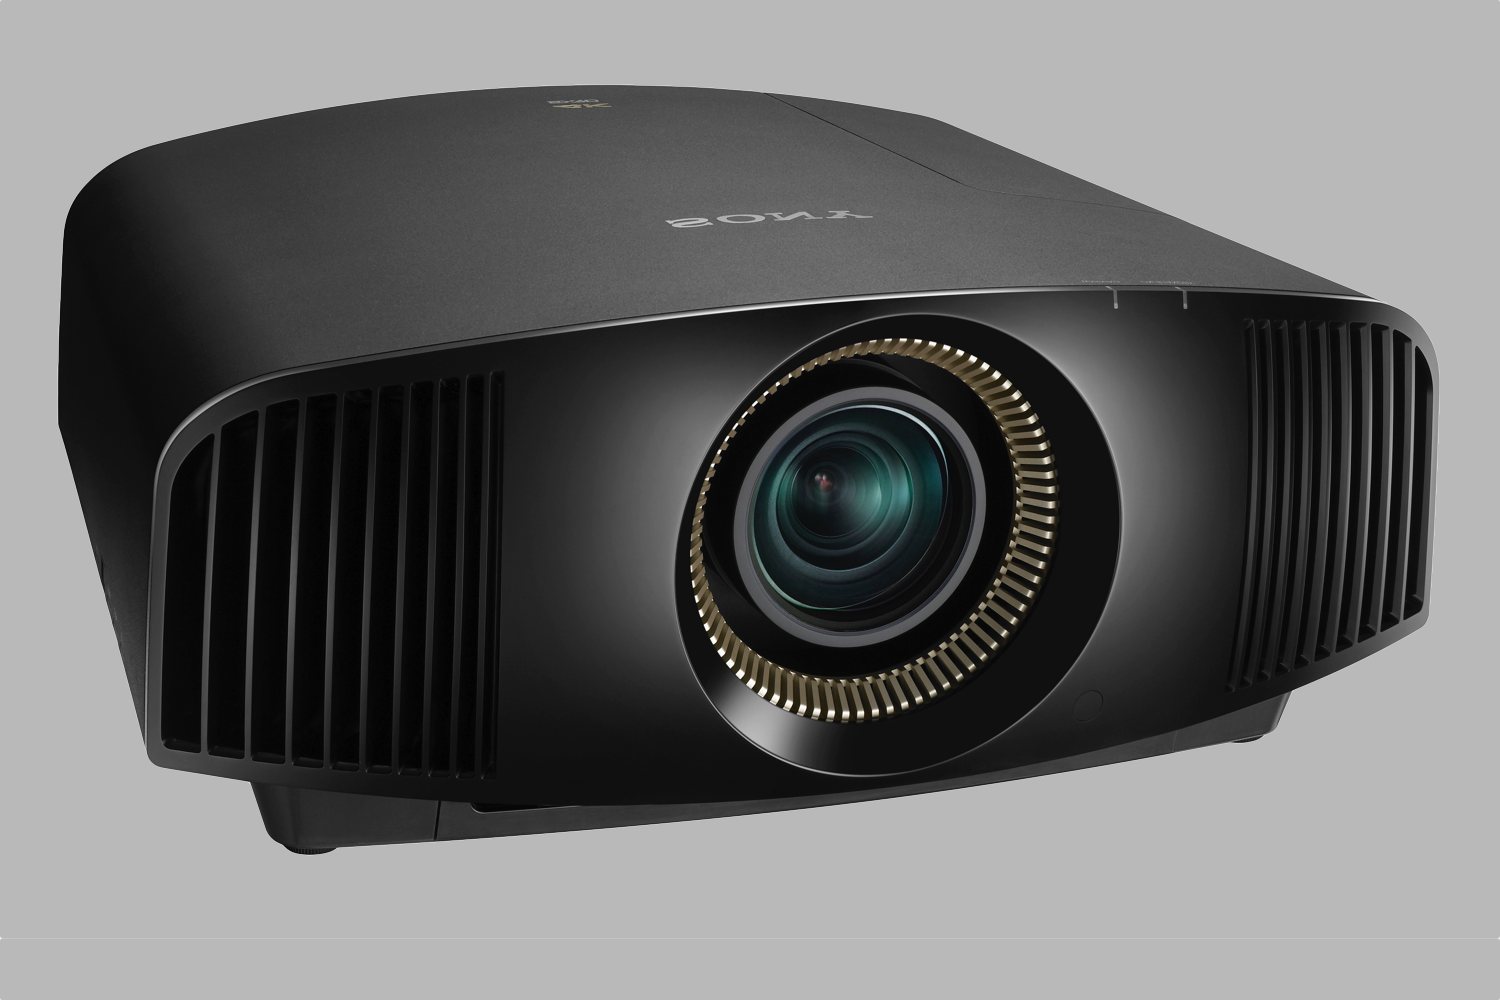 sony imax enhanced projectors tvs cedia 2018 vpl vw695es